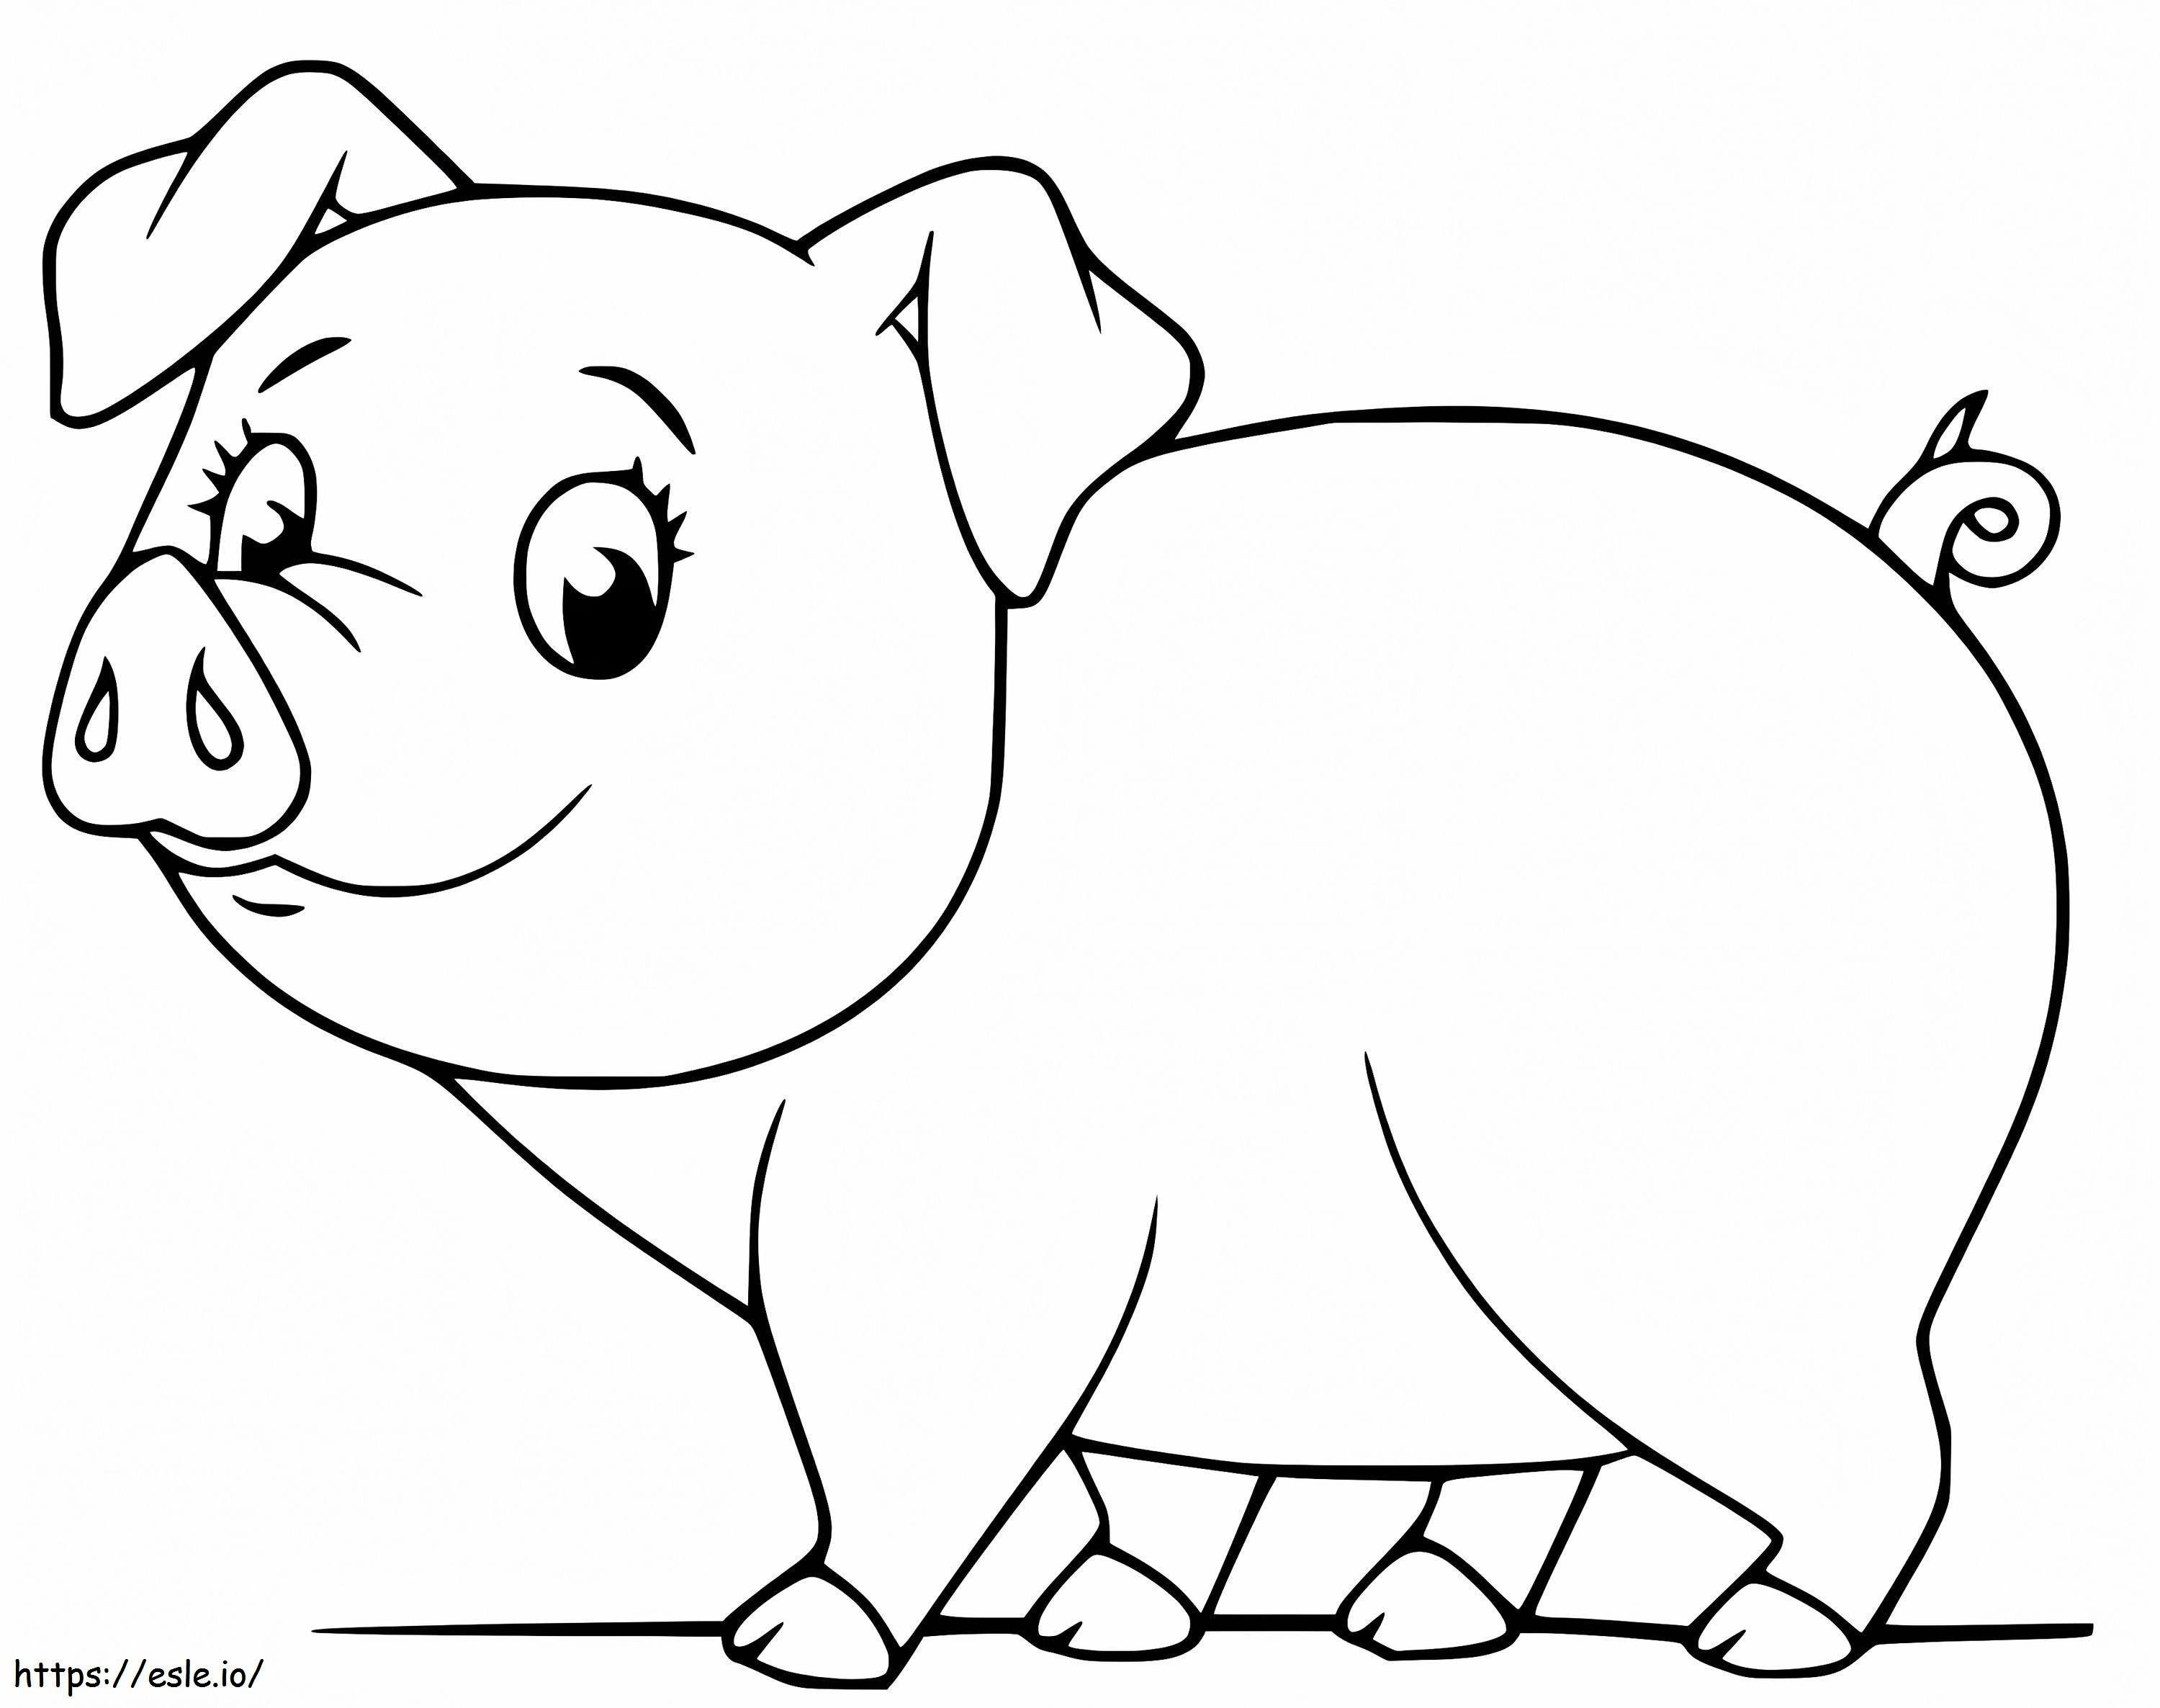 Coloriage Bébé Cochon 1 à imprimer dessin